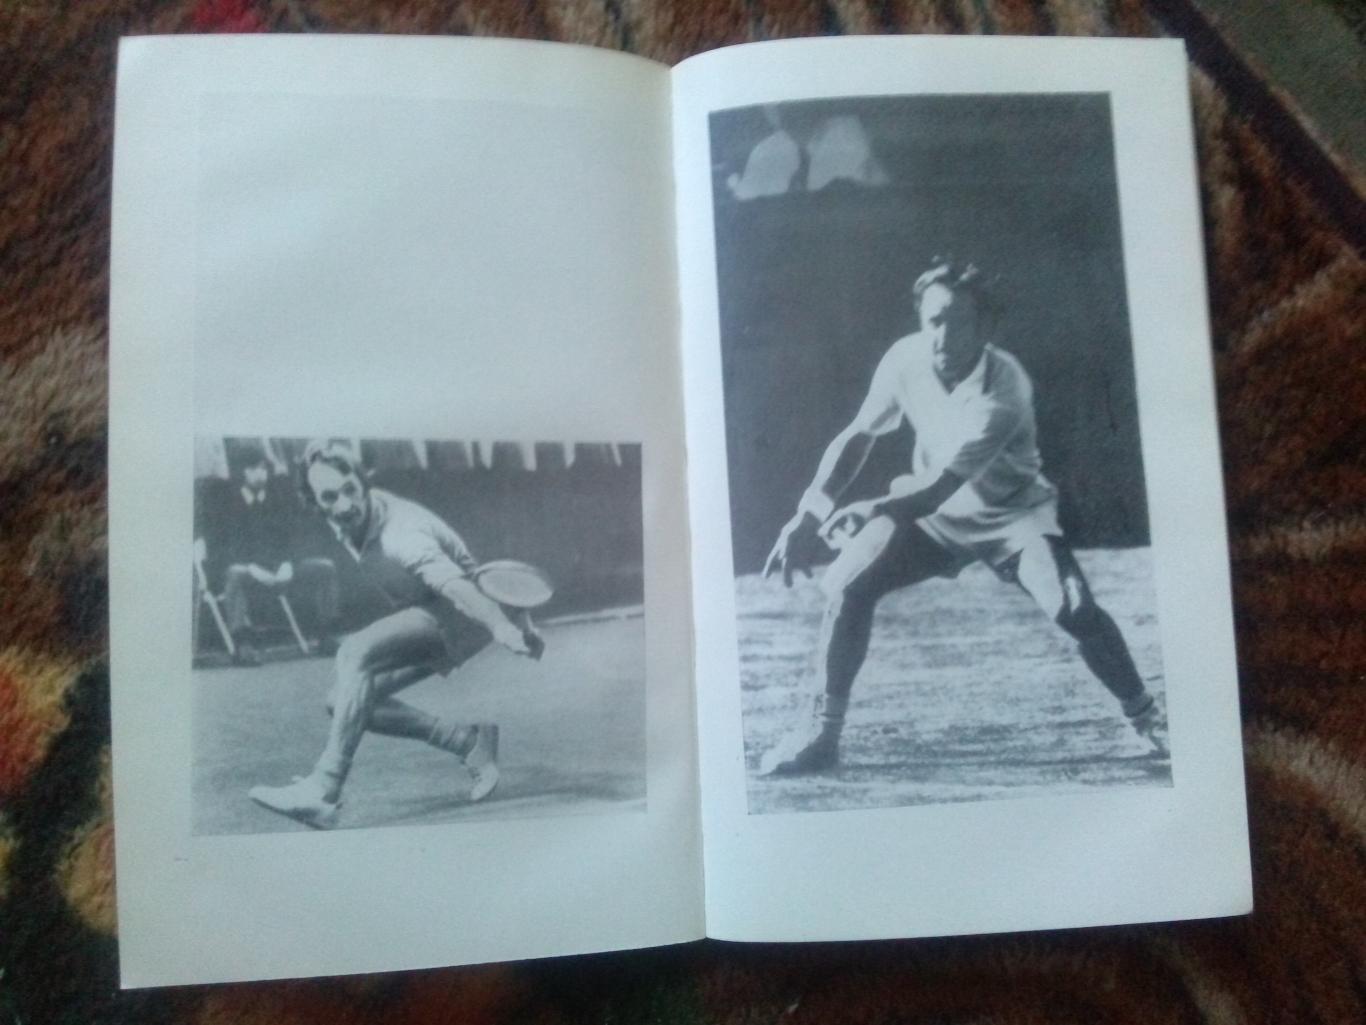 Род Лейвер , Бад Коллинз -Как побеждать в теннисе1978 г. ( Теннис , спорт) 5